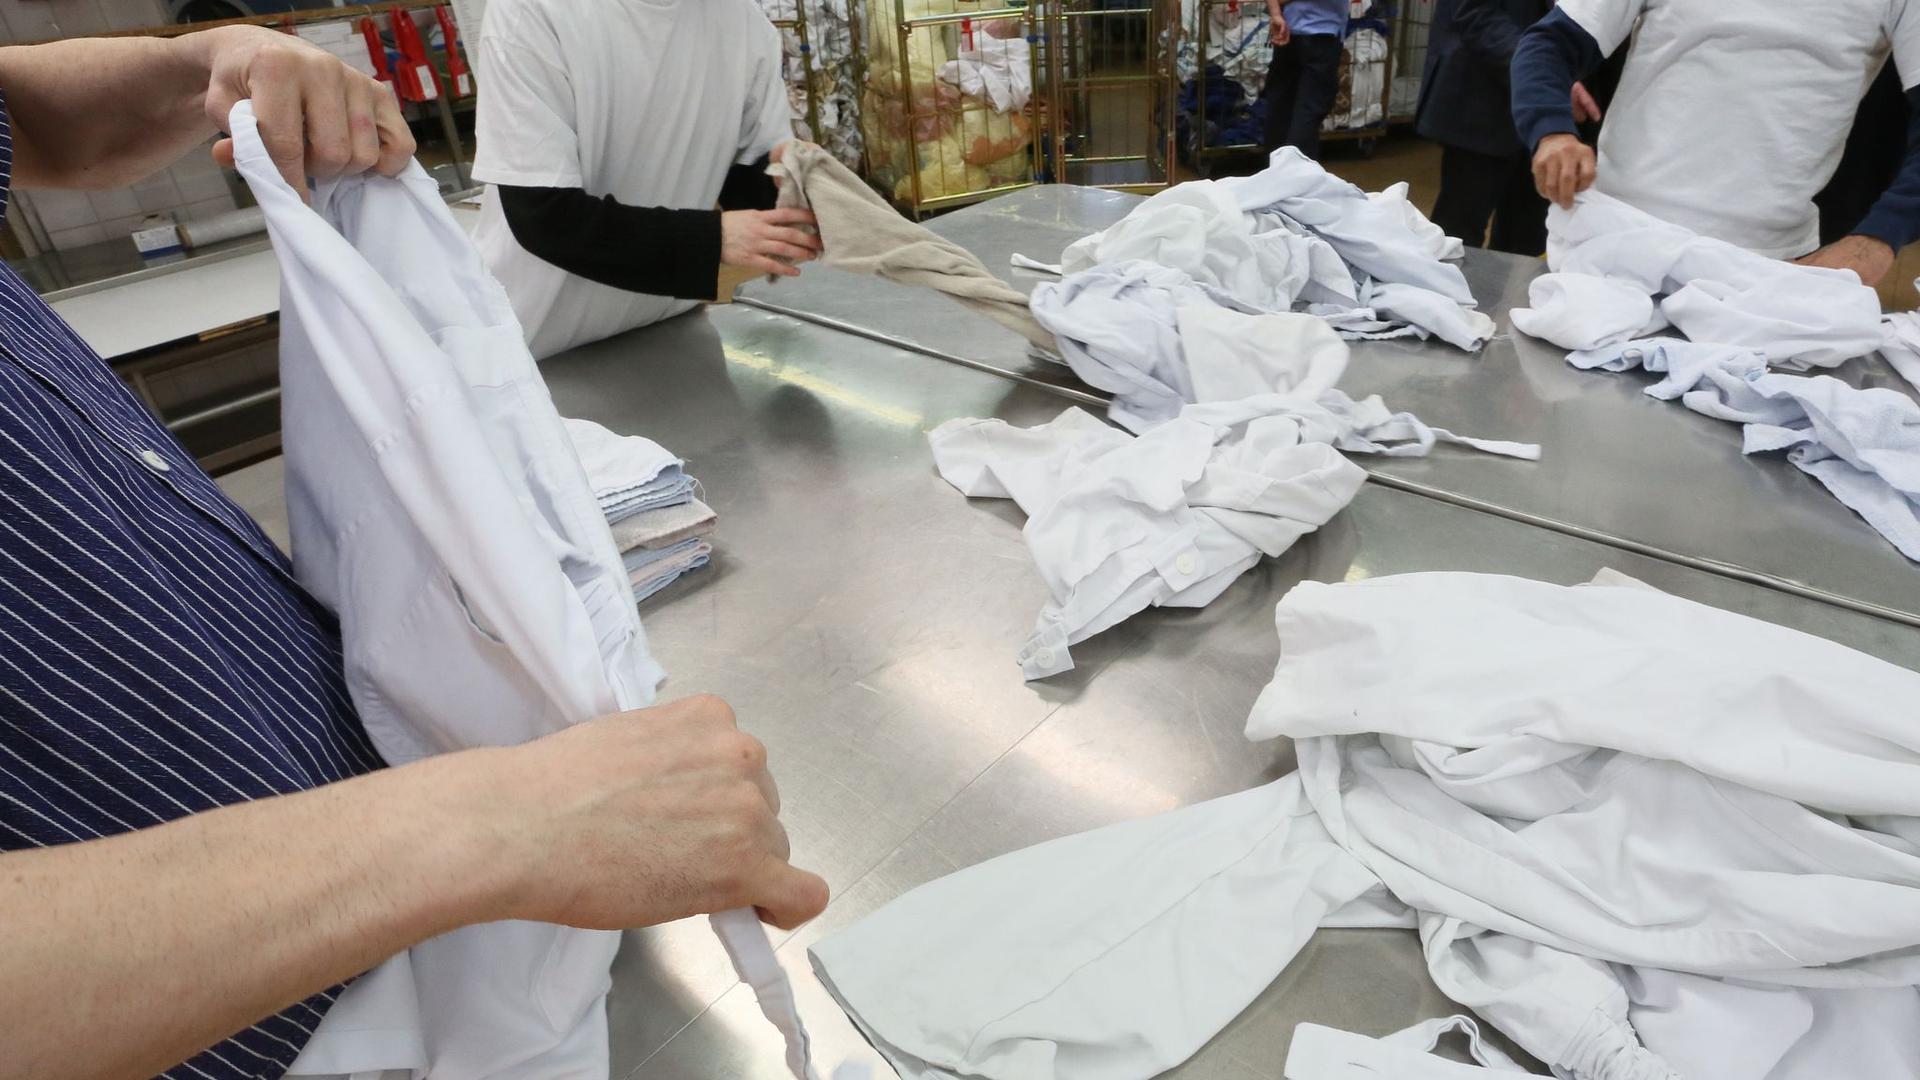 Gefangene der Justizvollzugsanstalt Plötzensee legen in der Wäscherei Wäsche zusammen.